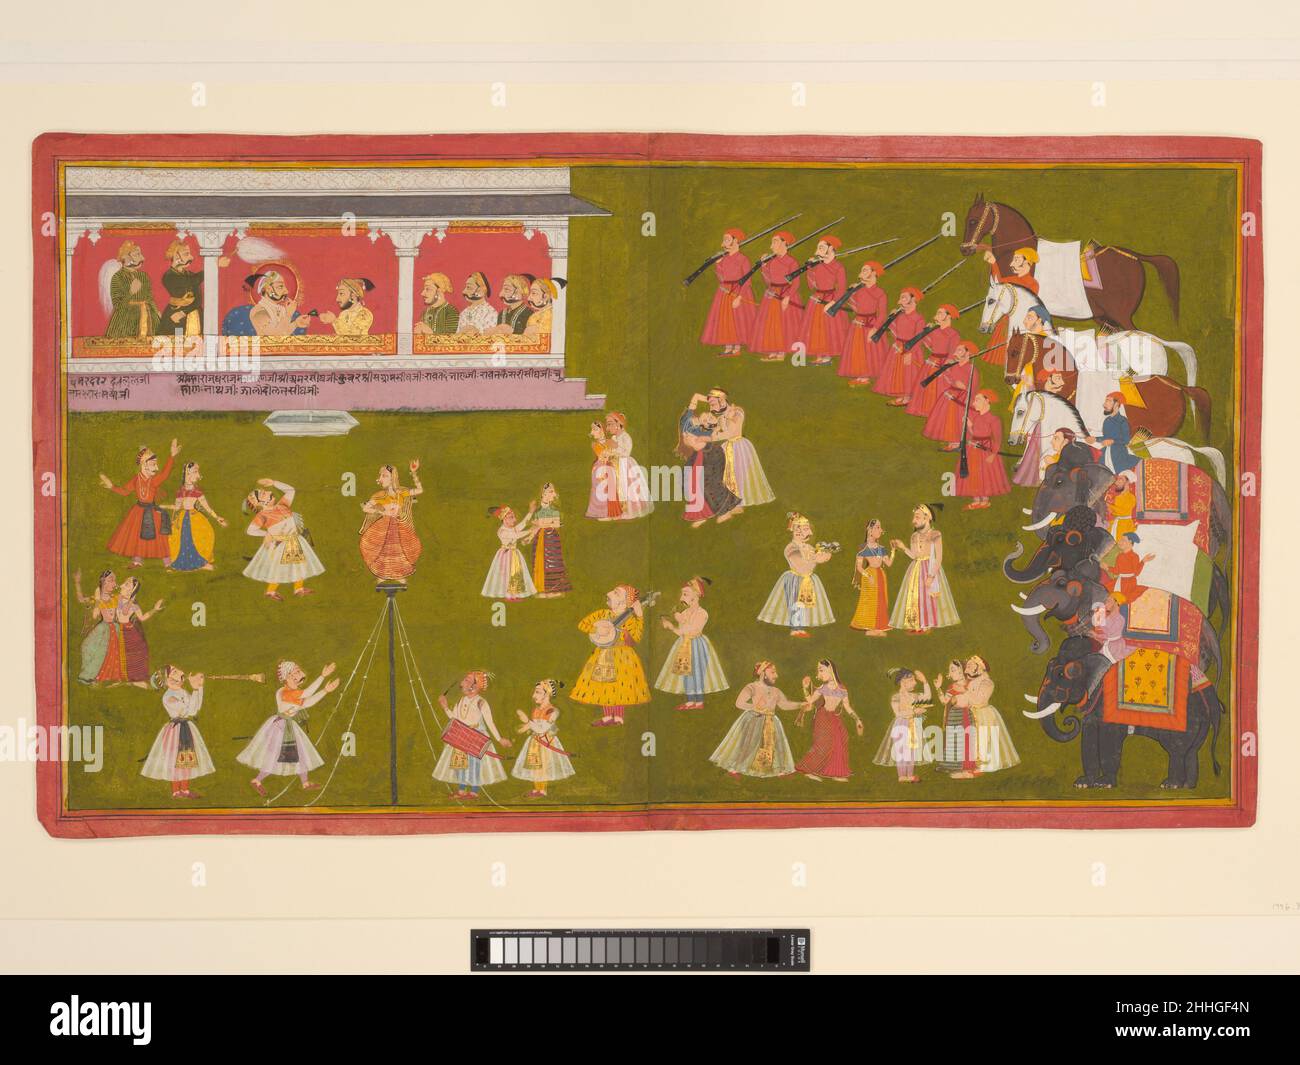 Maharana Amar Singh II, Prince Sangram Singh und Höflinge Sehen Sie sich eine Aufführung an. 1705–8 Indien (Rajasthan, Mewar) Diese Szene von Schauspielern und Akrobaten, die für den maharana auftreten, veranschaulicht die Veränderungen, die während der Herrschaft von Amar Singh II. In der Malerei stattgefunden haben. Wie seine Vorgänger aus dem 17. Jahrhundert hat der Künstler mehrere Momente gleichzeitig dargestellt, trennt die Momente aber nicht mehr strikt voneinander. Stattdessen hat er die Zeit zusammengebrochen, indem er verschiedene Episoden nebeneinander vorstellt, während er keinen Versuch unternimmt, die Reihenfolge zu klären, in der sie aufgetreten sind. Die Arti Stockfoto